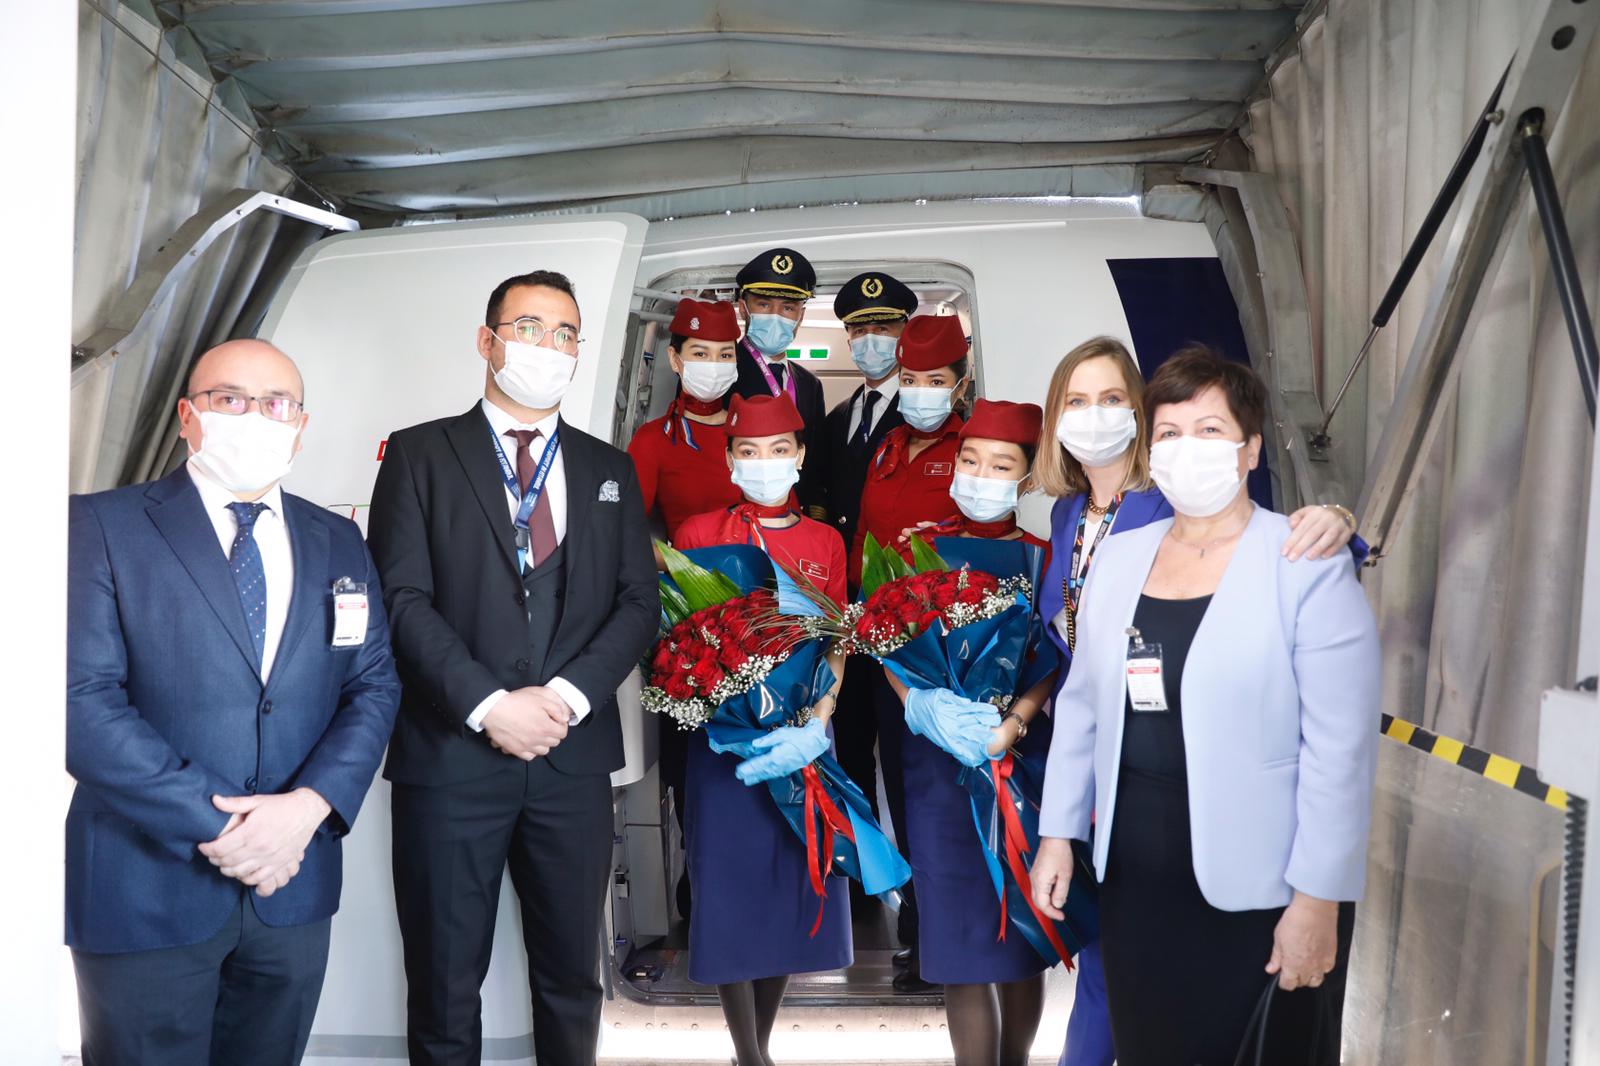 Kazakistan'a tarifeli ilk uçuş Sabiha Gökçen'den